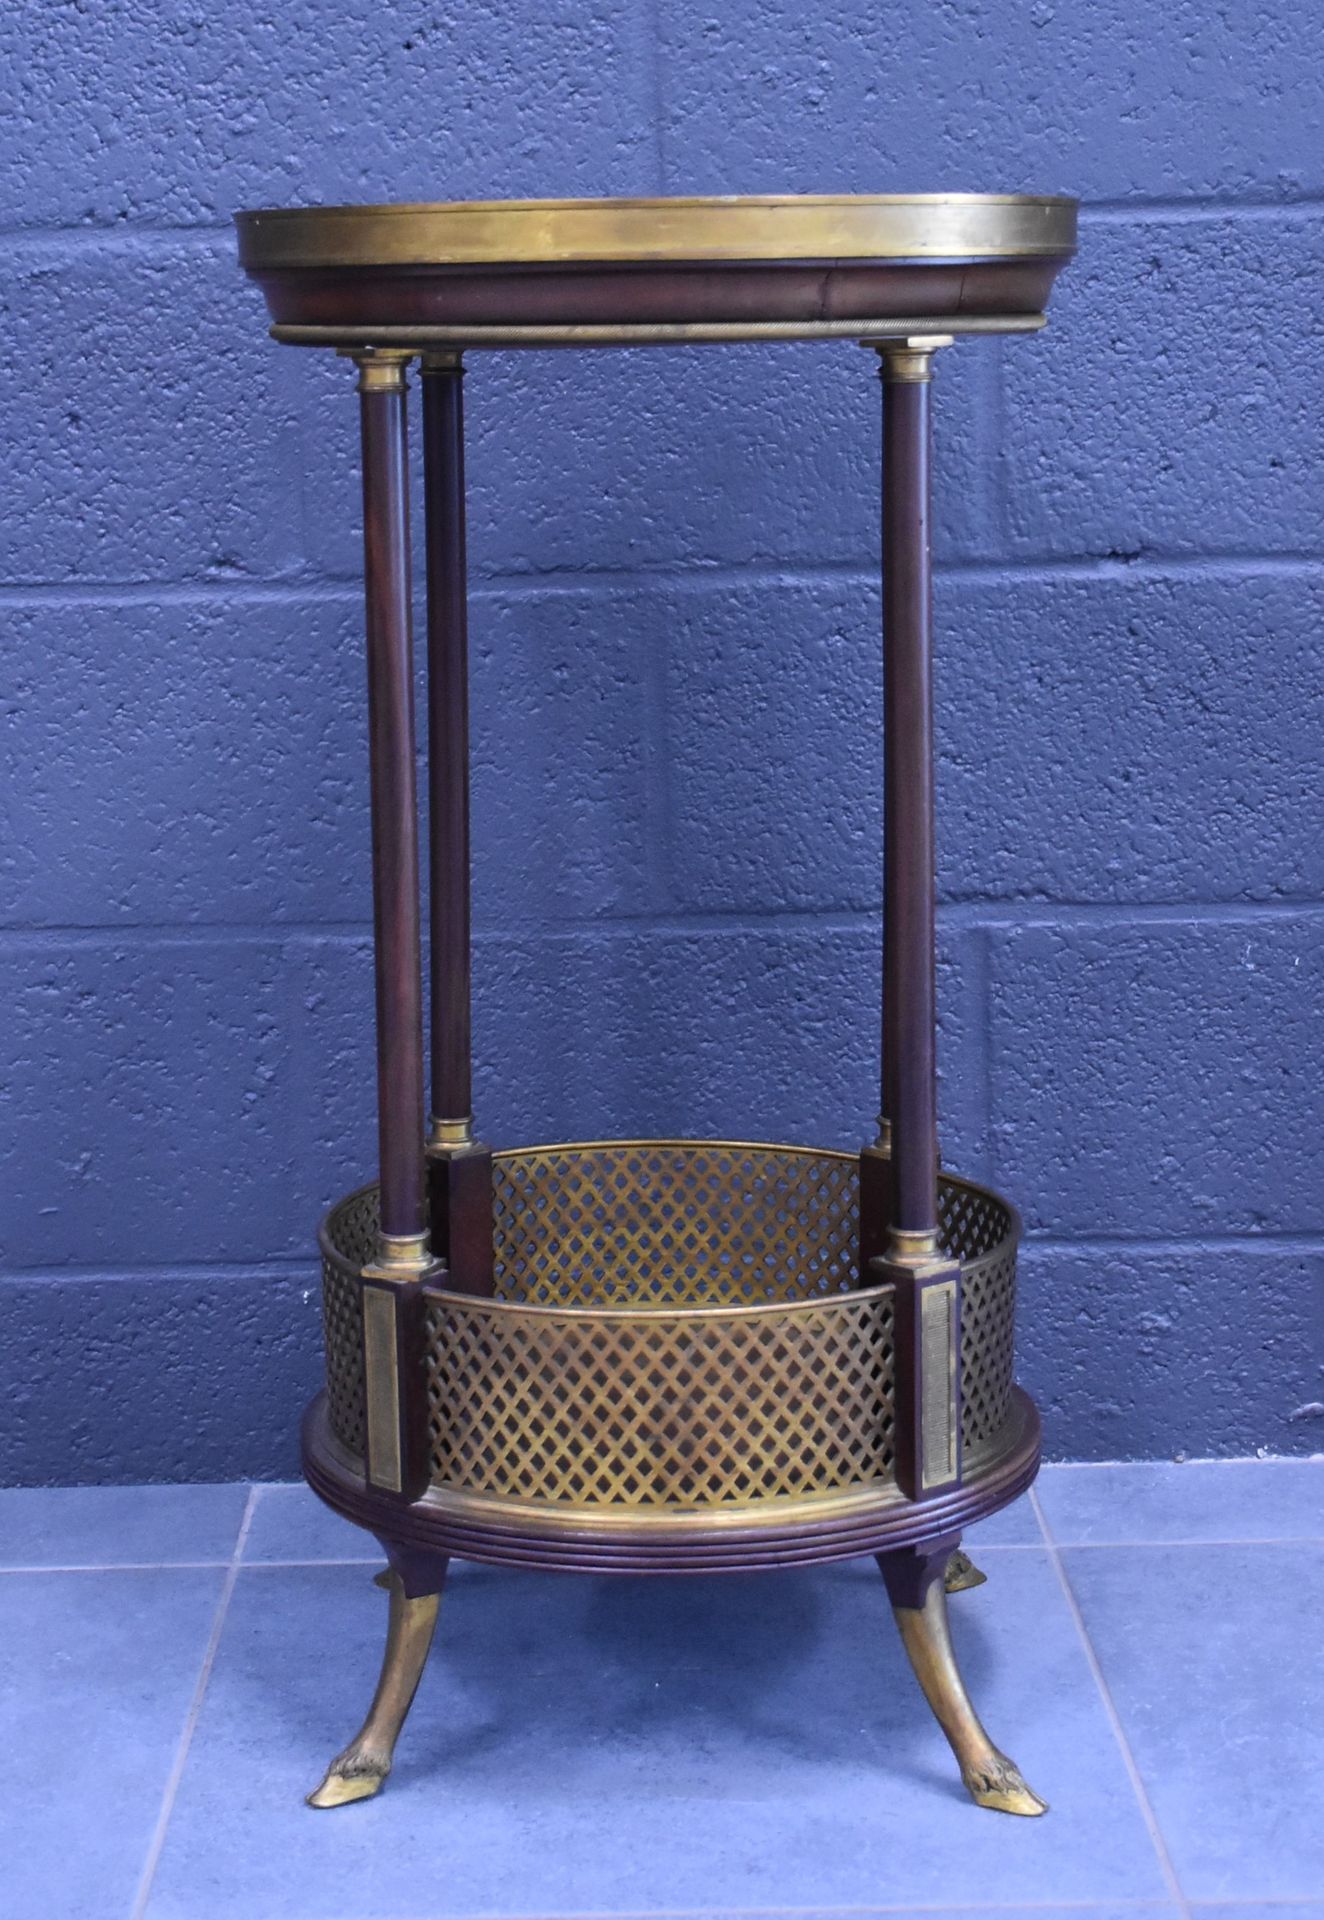 Null 路易十六风格的小边桌，用鎏金铜器装饰。蹄子形式的青铜脚。高度：74厘米。直径：40厘米。大理石的损坏。